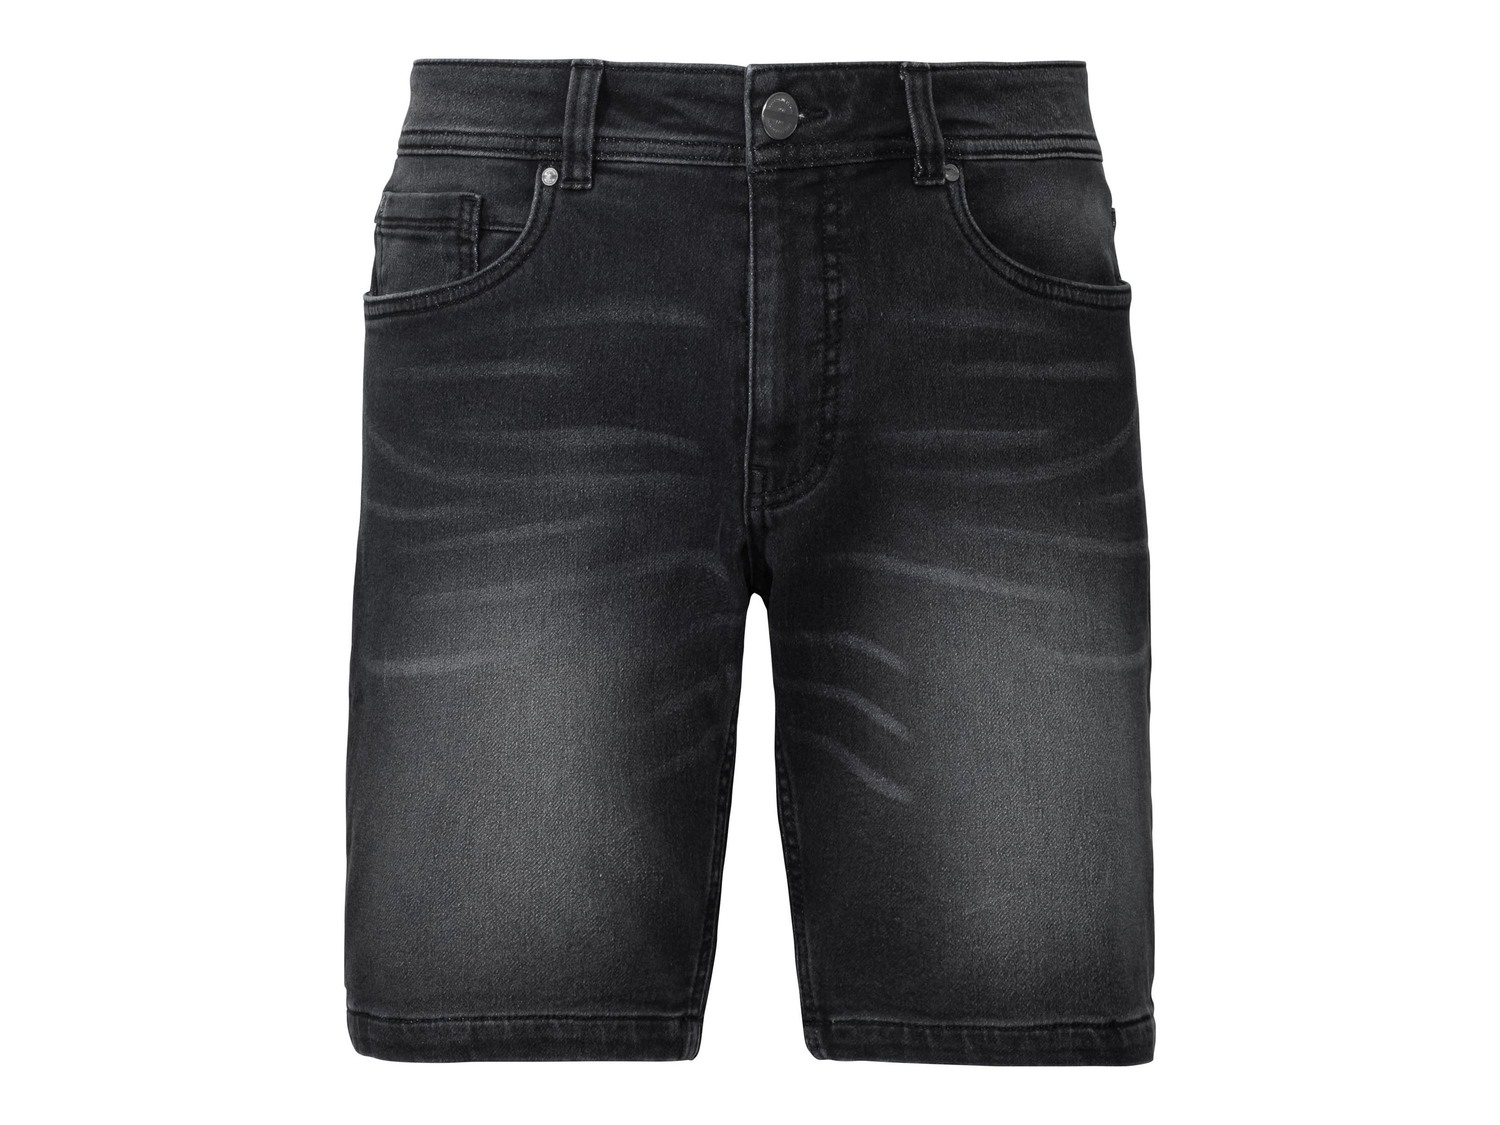 Bermuda in jeans da uomo Livergy, prezzo 7.99 &#8364;  
Misure: 46-56